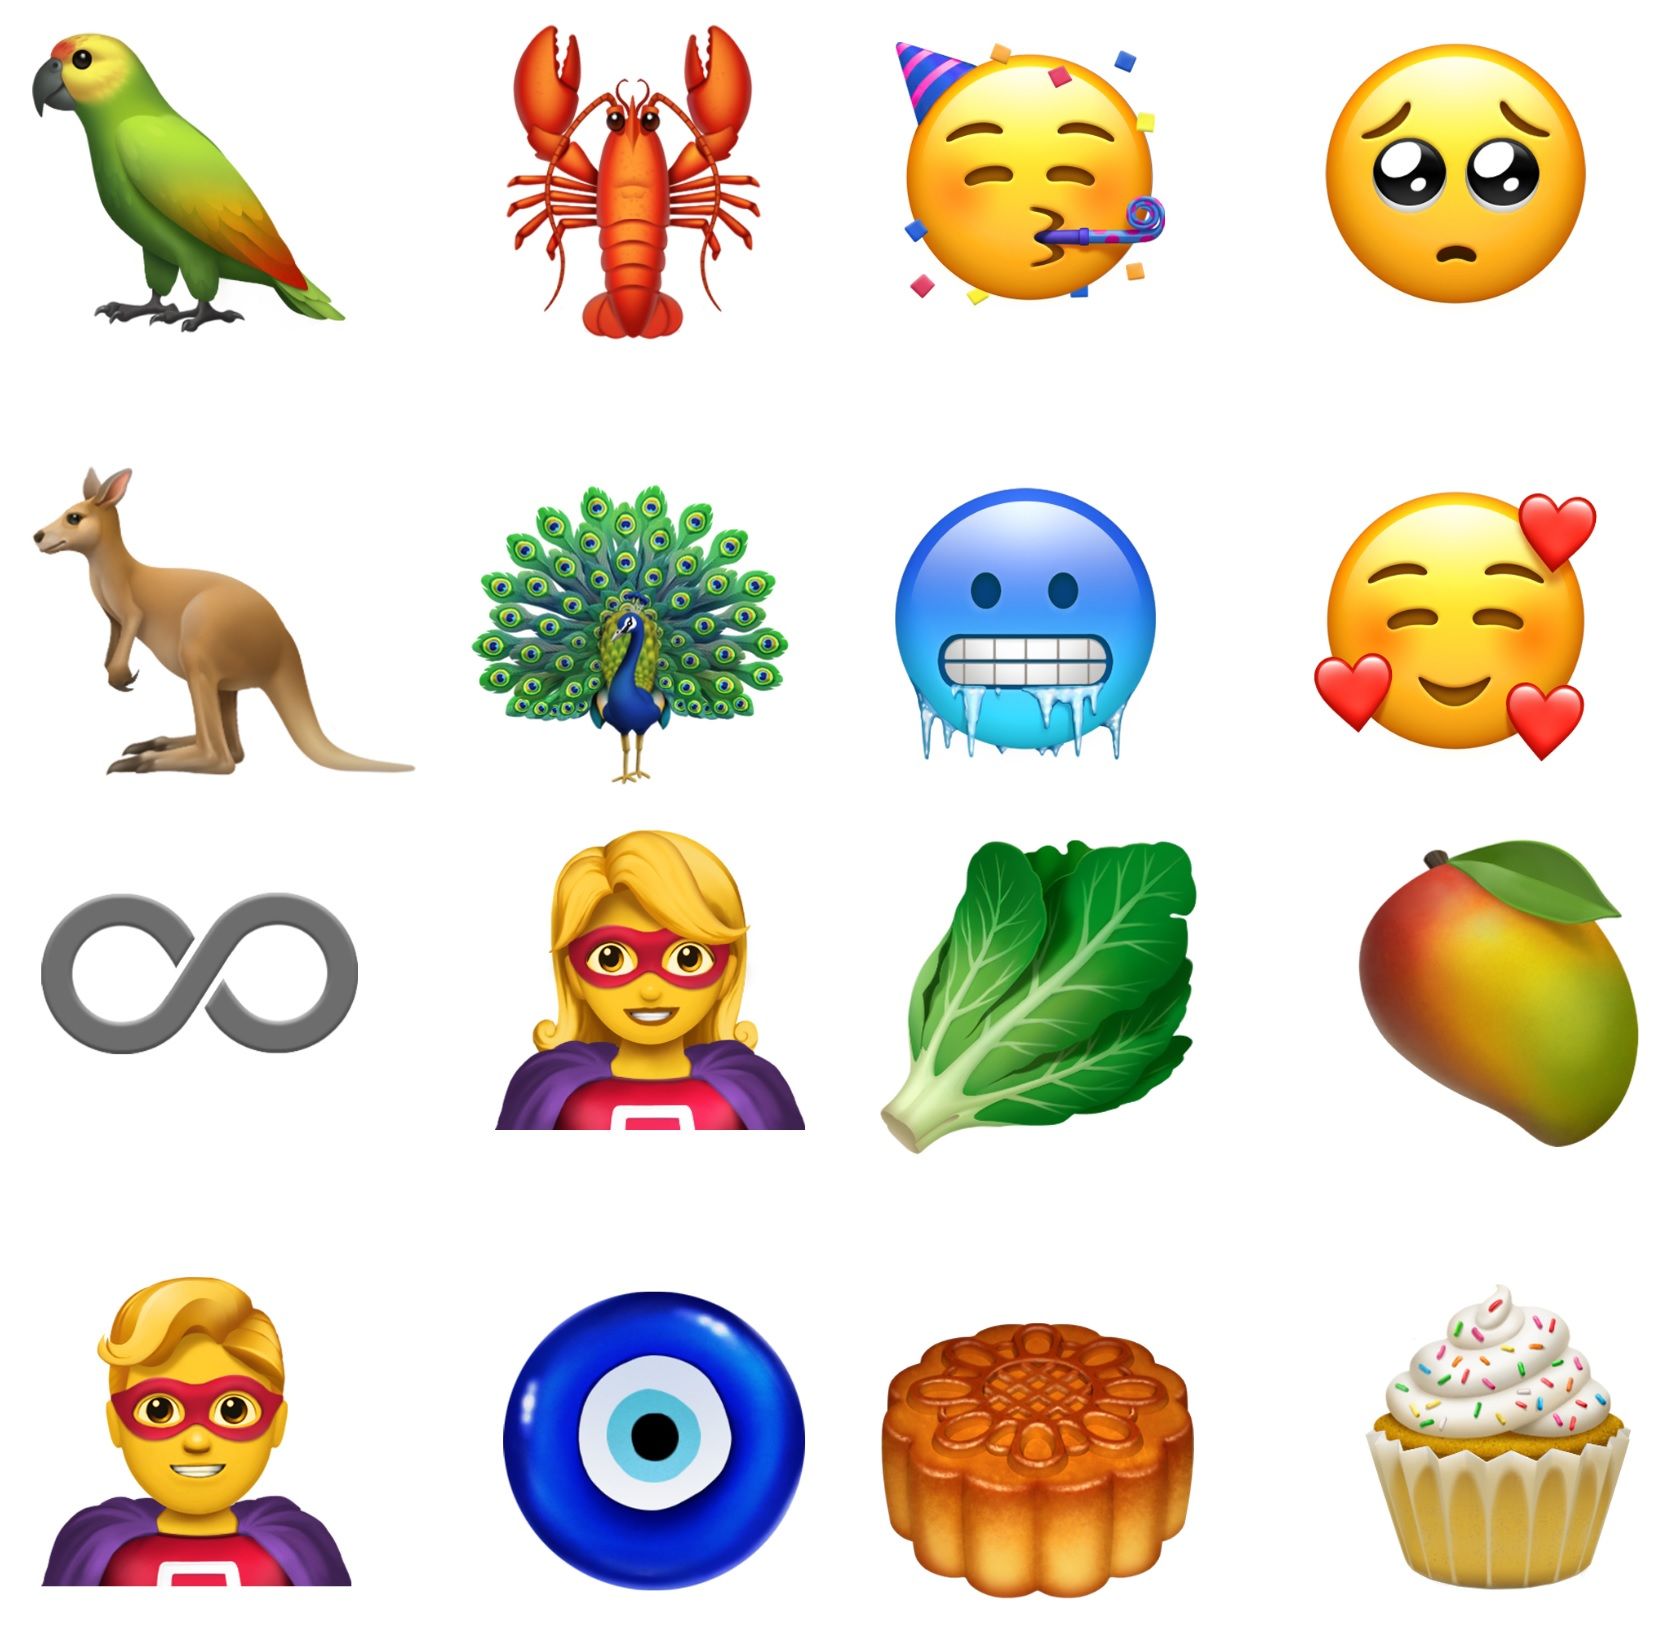 Happy World Emoji Day! Apple Unveils 70 New Emoji in Latest iOS Update